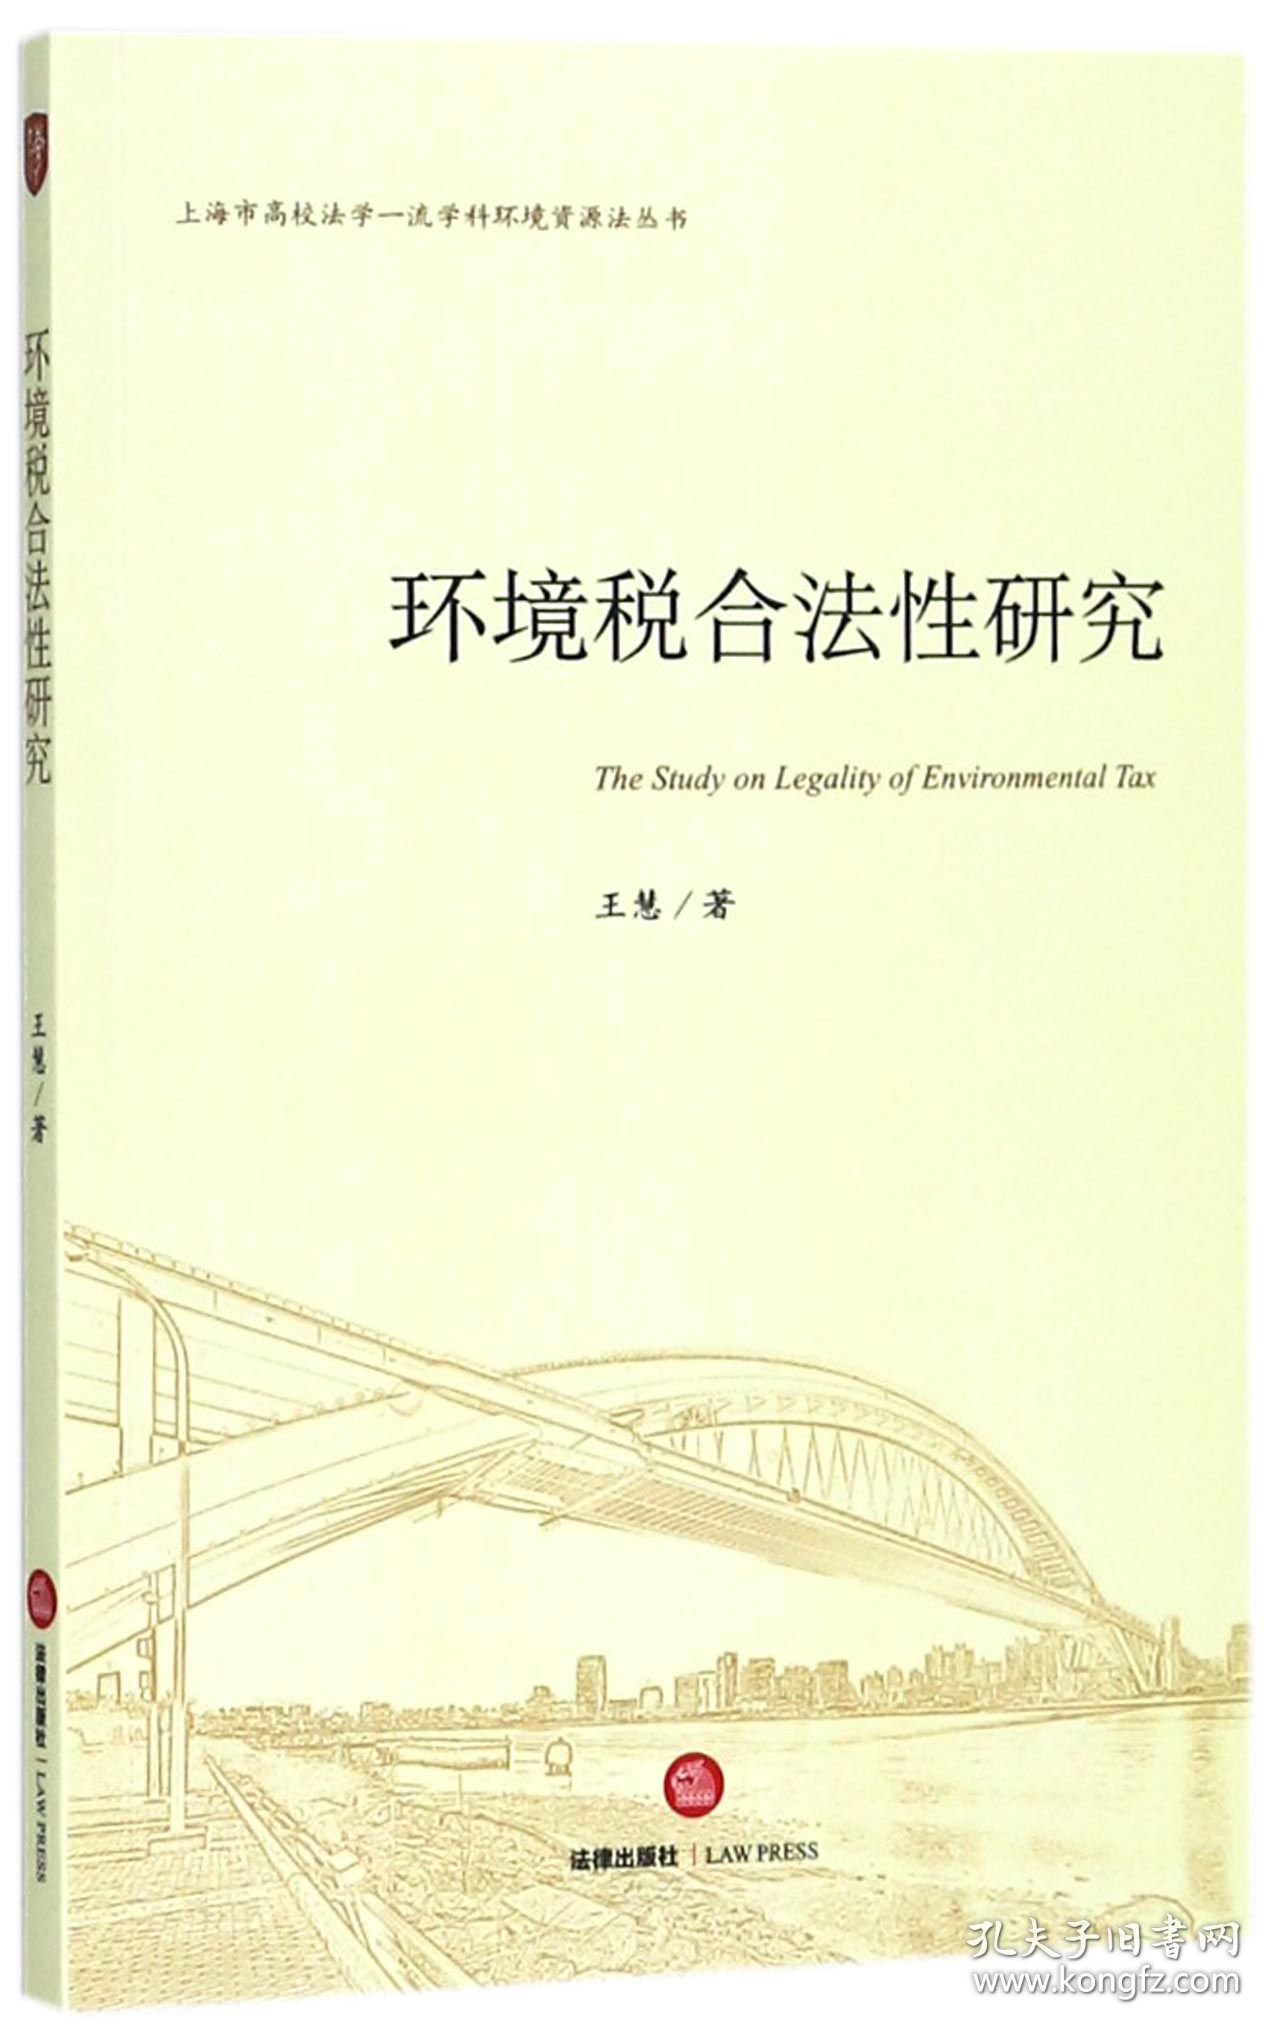 [正版现货]环境税合法性研究/上海市高校法学一流学科环境资源法丛书